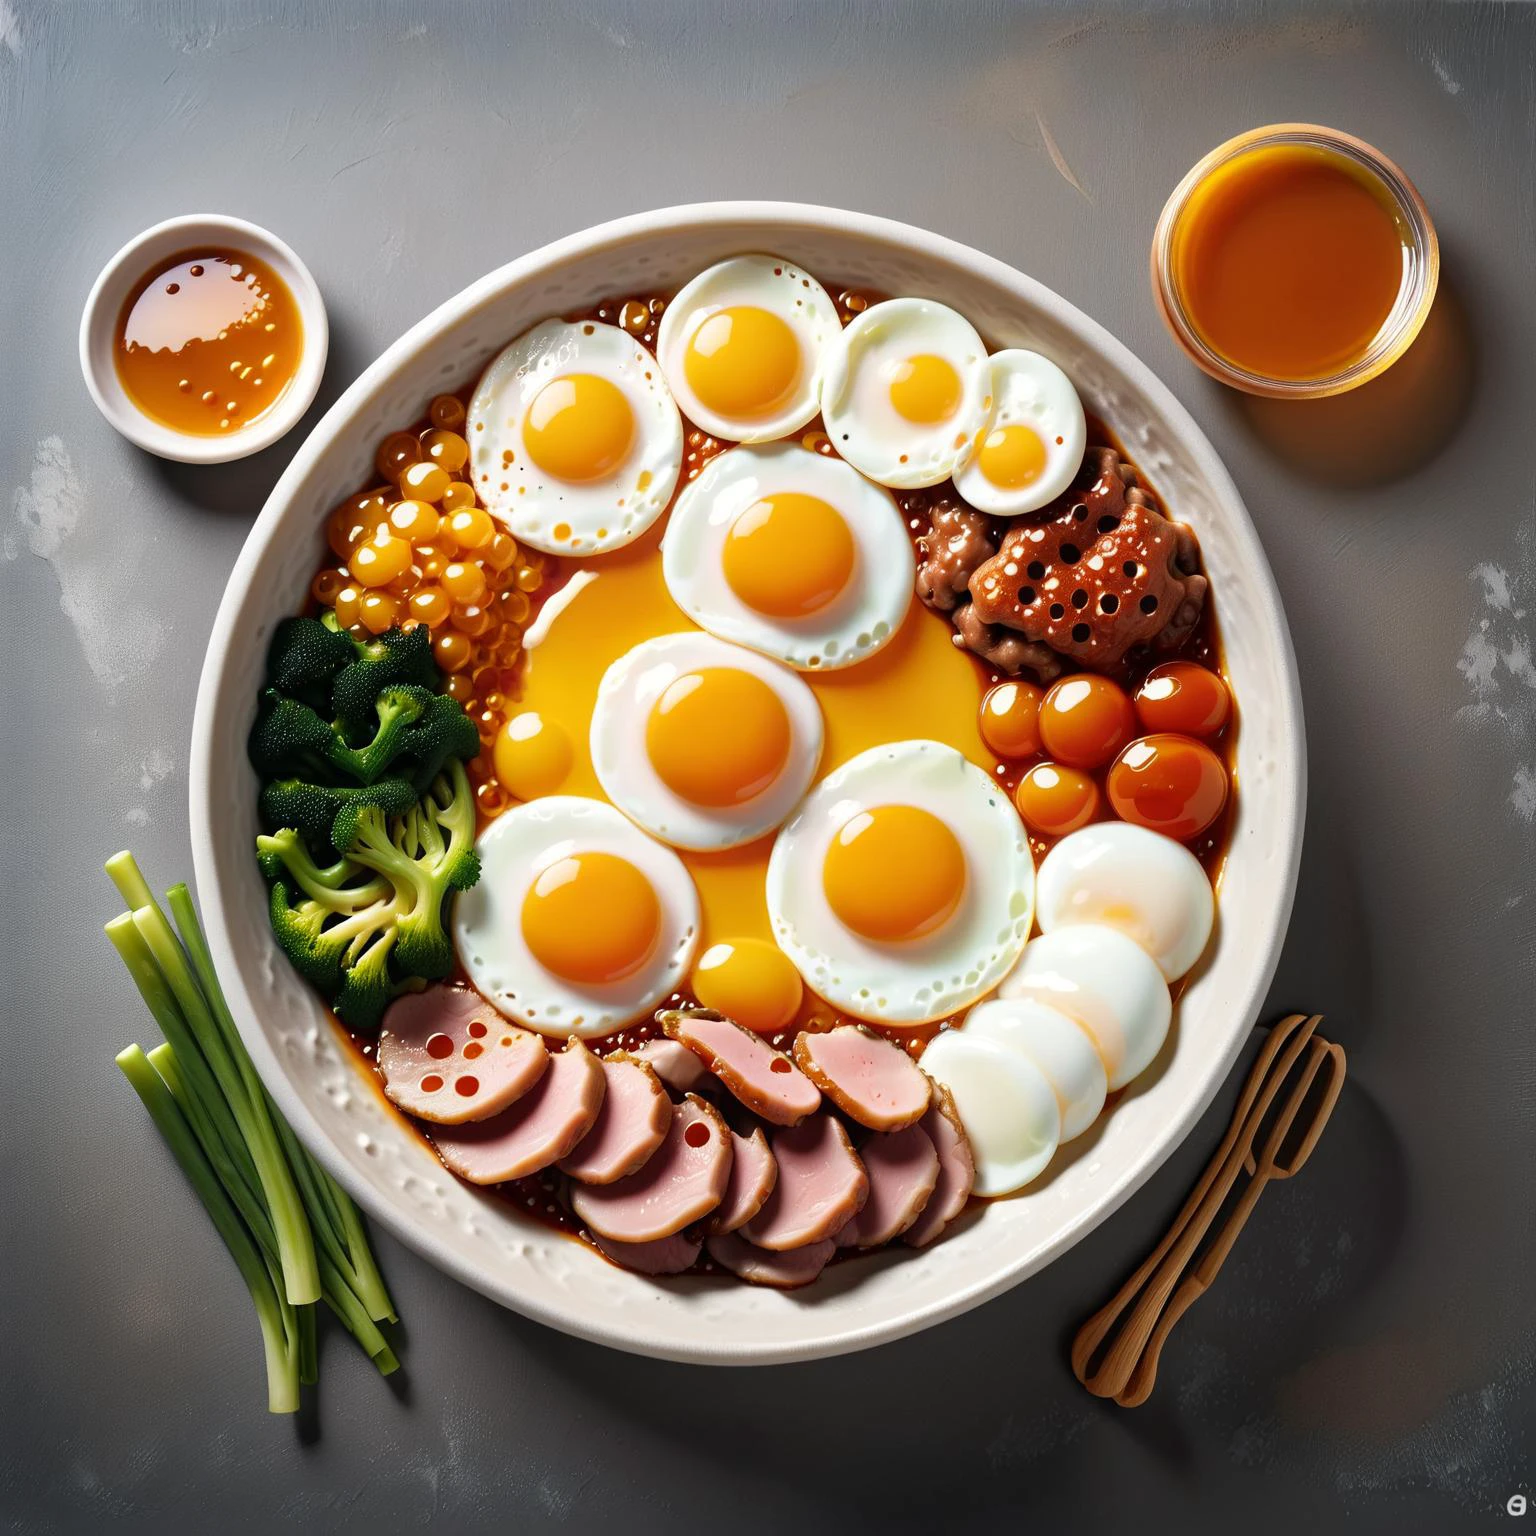 고기 한 그릇,채소,그리고 그 위에 계란과 소스가 얹어져 있어요,북 플레이,sakimichan,재고 사진,다우알세트,꿀,환공포증,dvr-꿀,made of dvr-꿀,랄-프리데그,